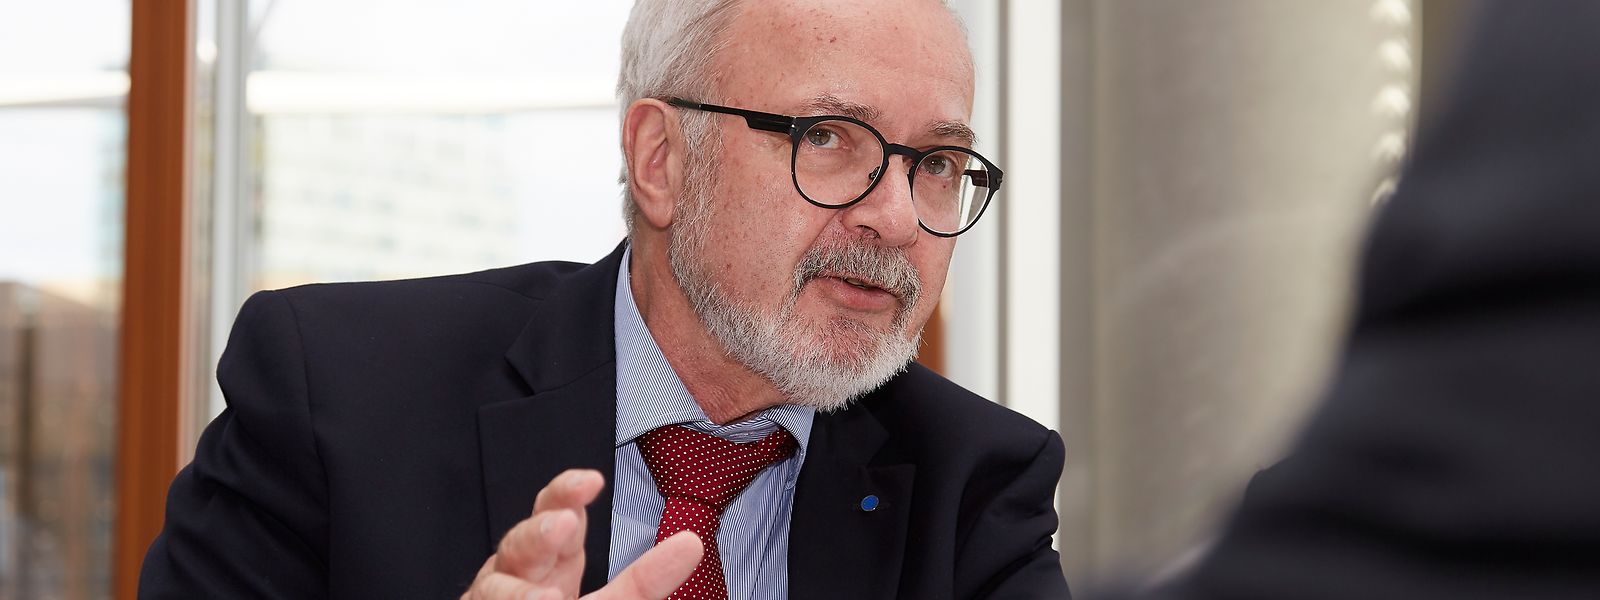 Werner Hoyer ist seit Januar 2012 Präsident der Europäischen Investitionsbank. Er steht am Anfang seiner zweiten sechsjährigen Amtszeit.